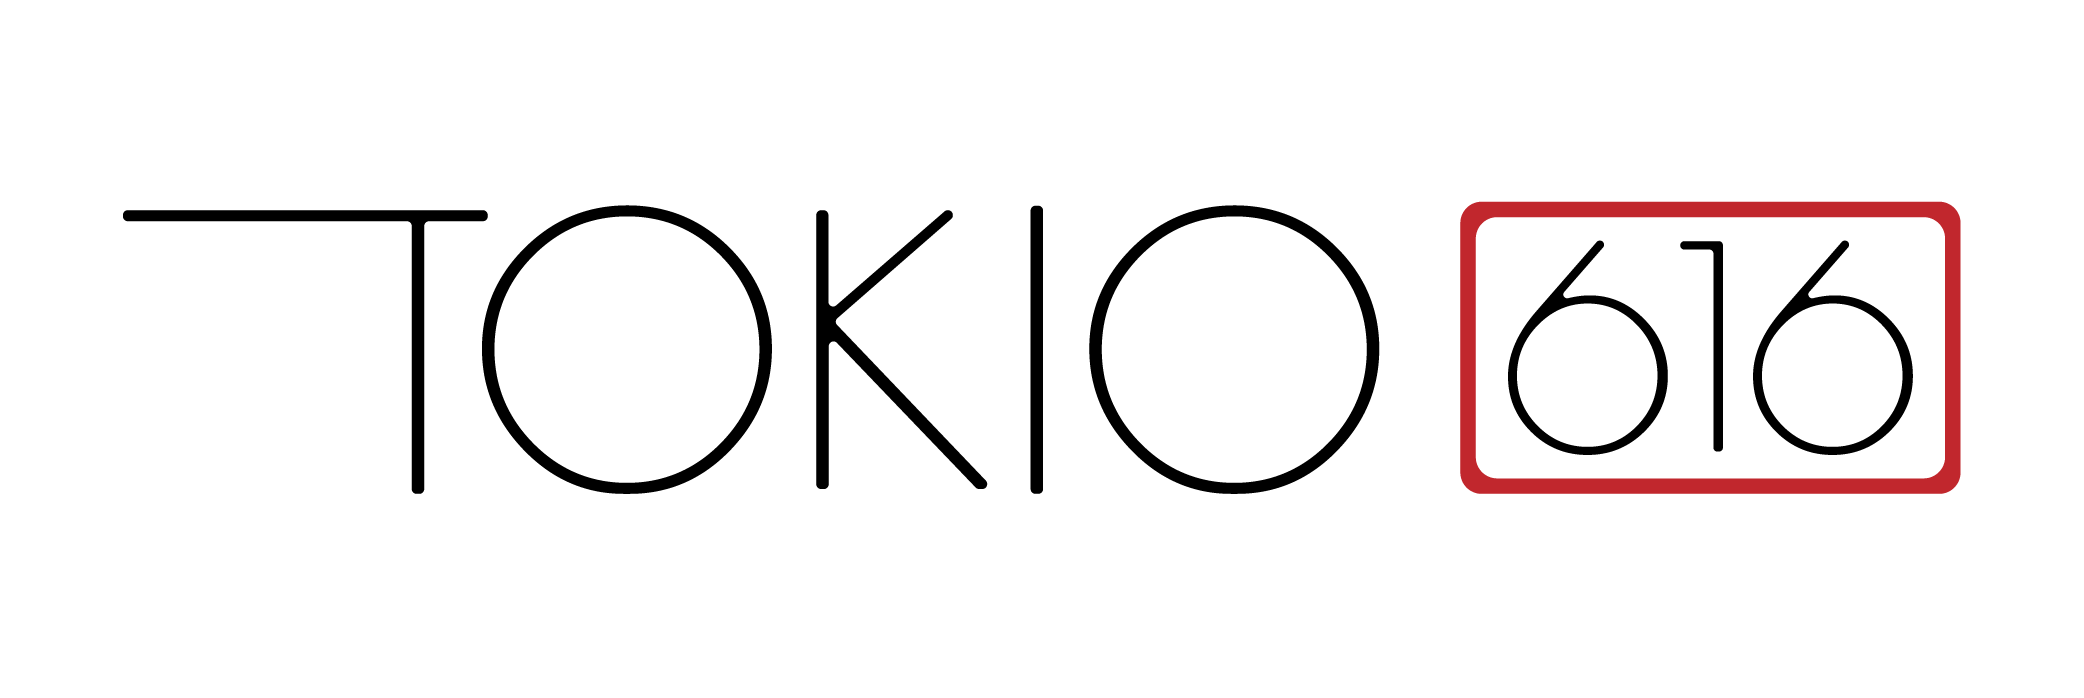 Tokio 616 Logotipo